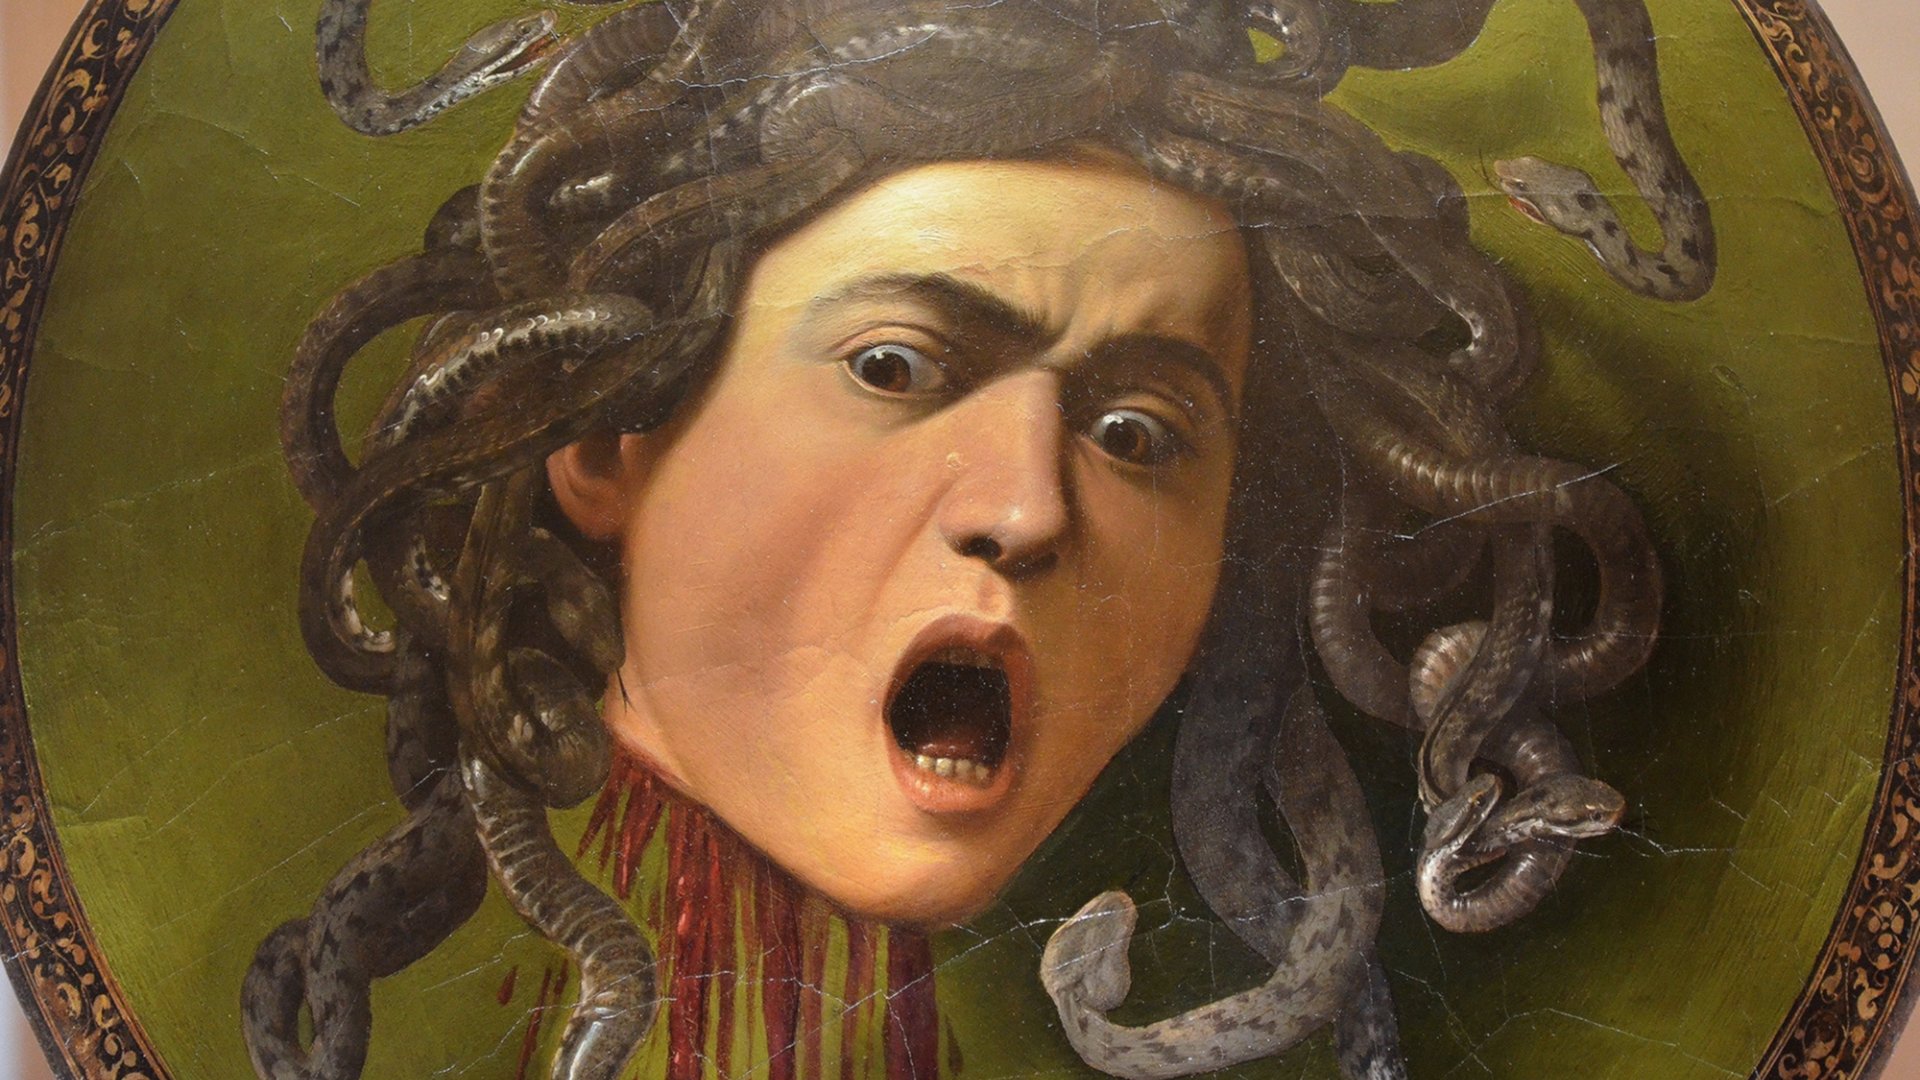 Caravaggio's Medusa